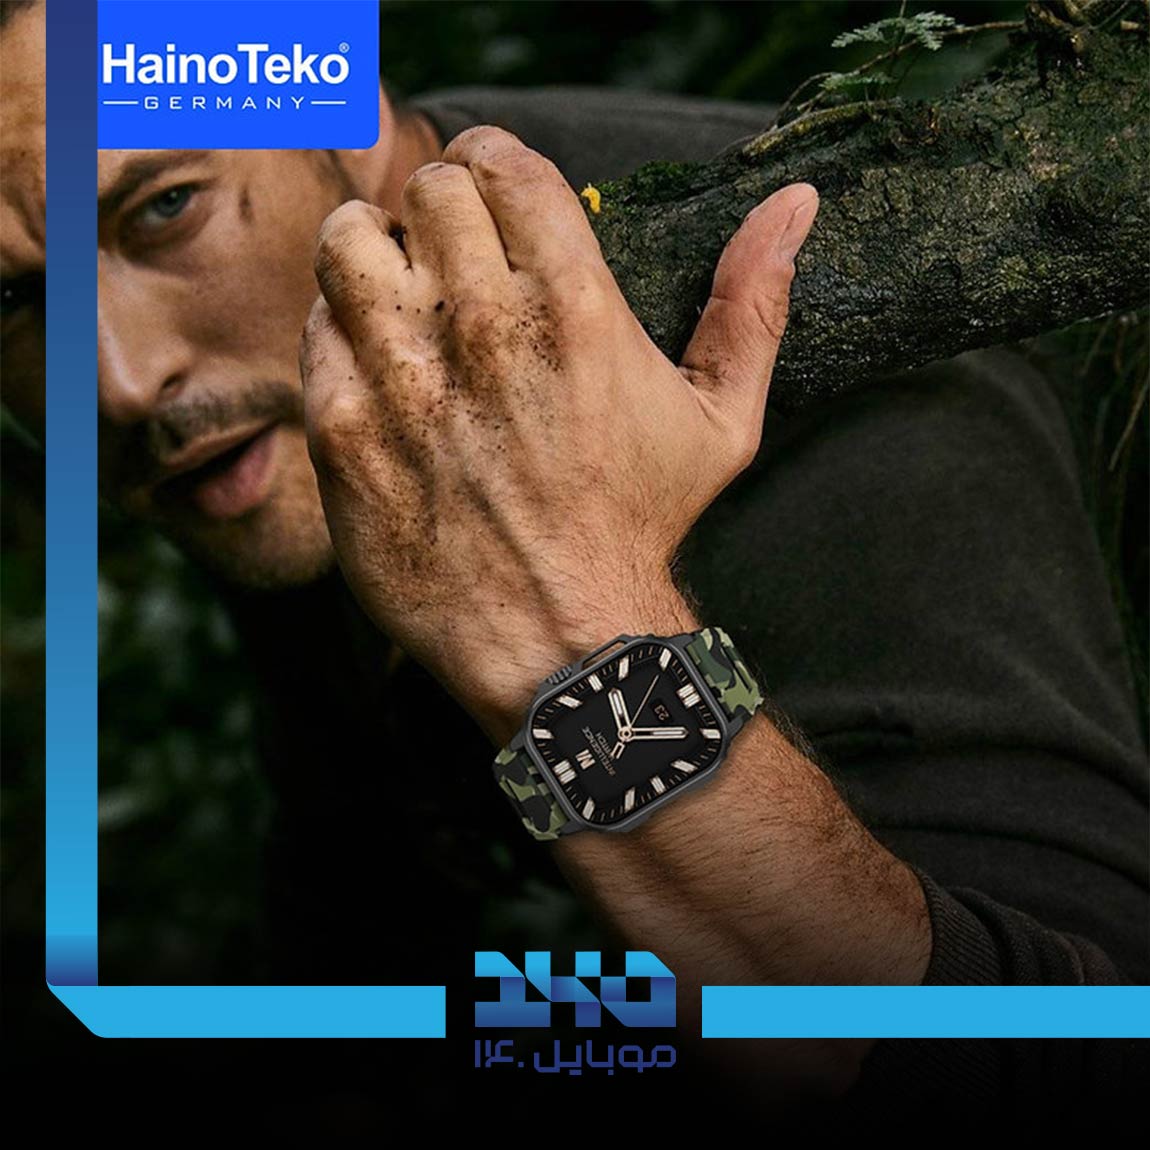 Haino Teko S2 Ultra Smart Watch 8